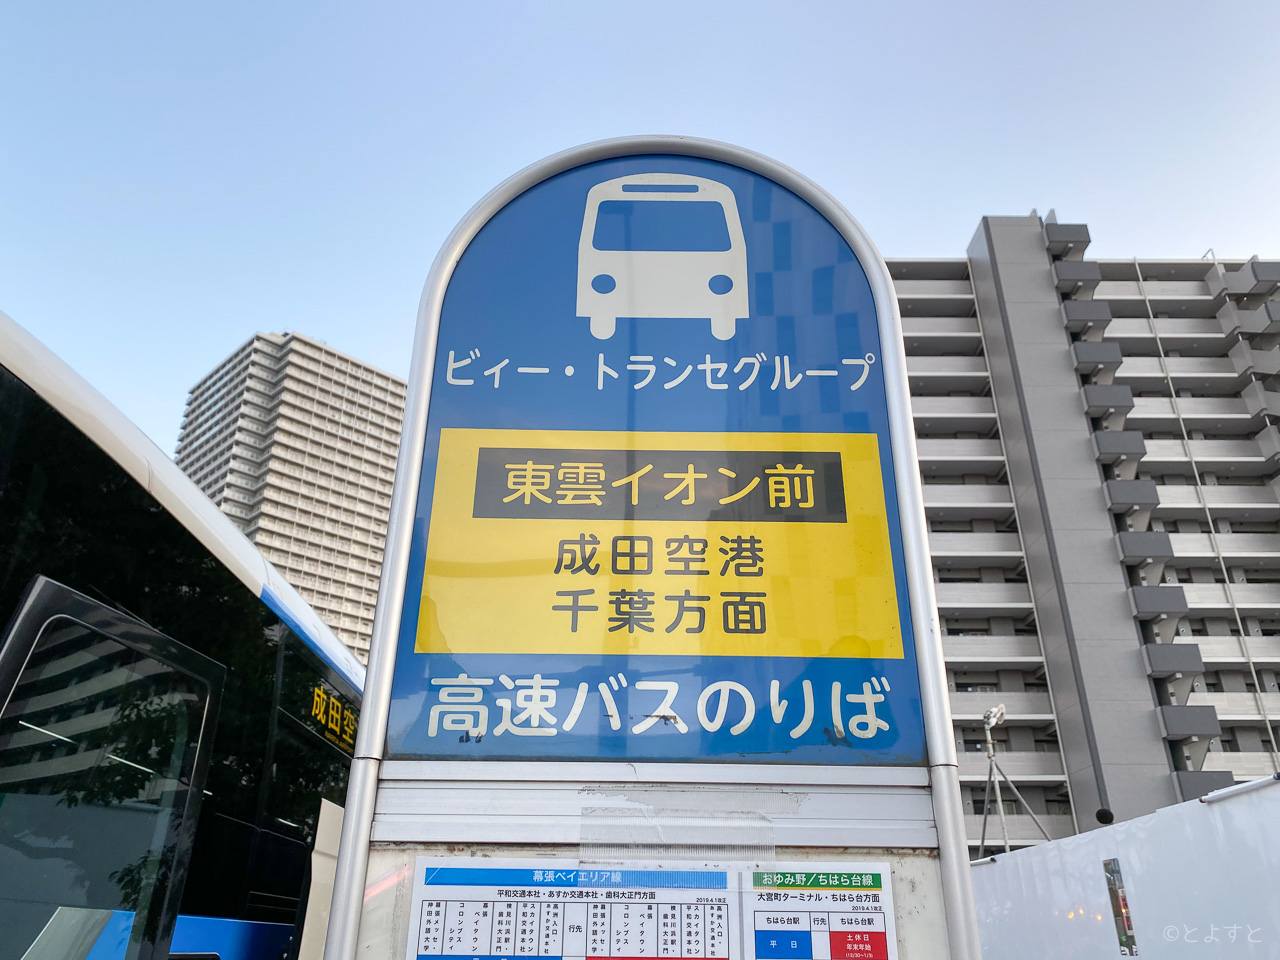 成田空港行きエアポートバス Tyo Nrtの予約方法と乗車場所 284便に増えてより便利に とよすと